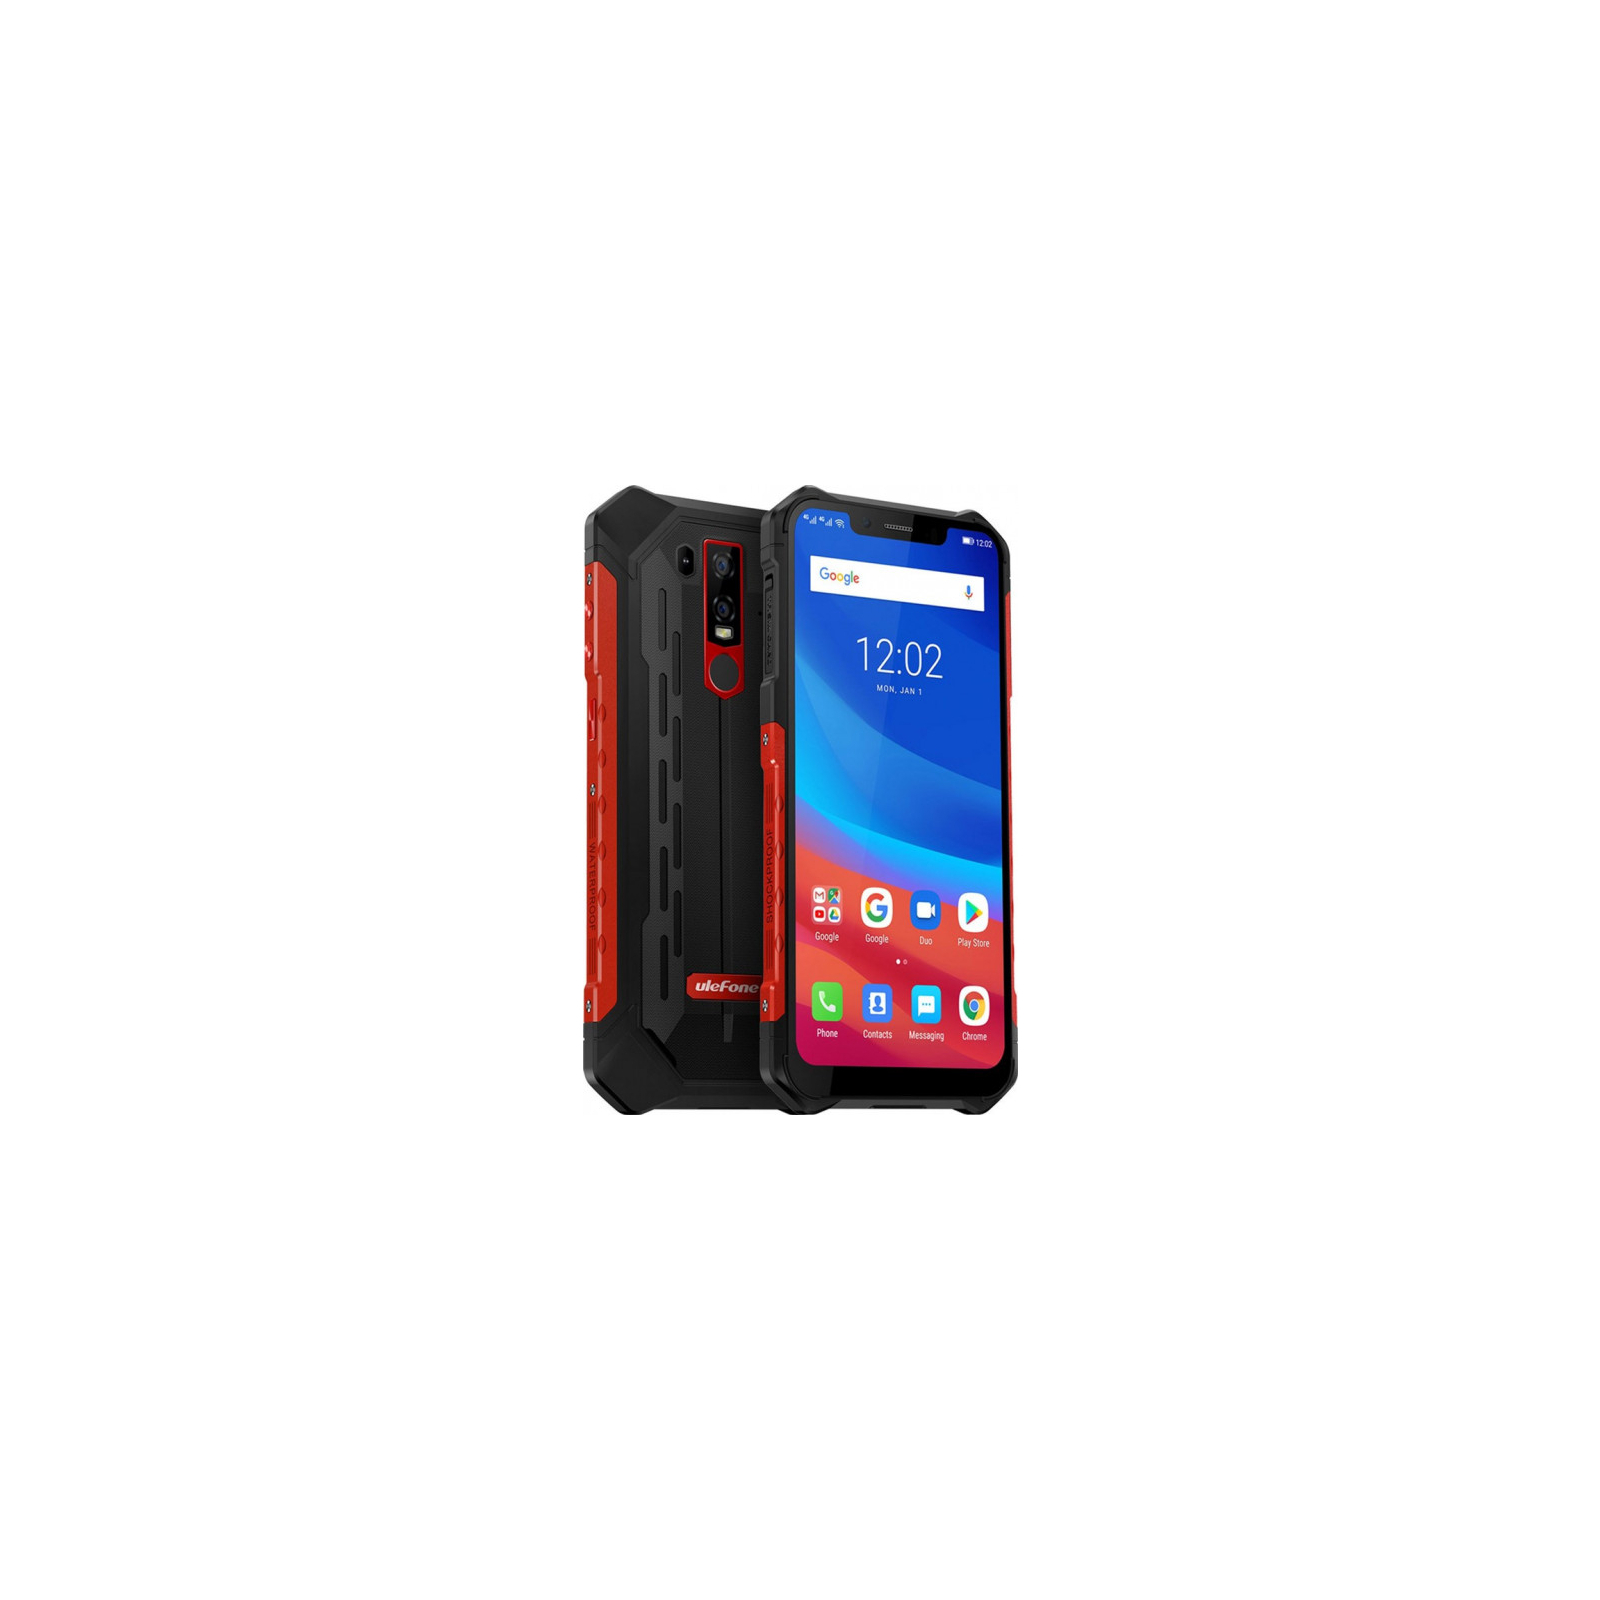 Мобільний телефон Ulefone Armor 6e 4/64Gb Black Red (6937748733089)